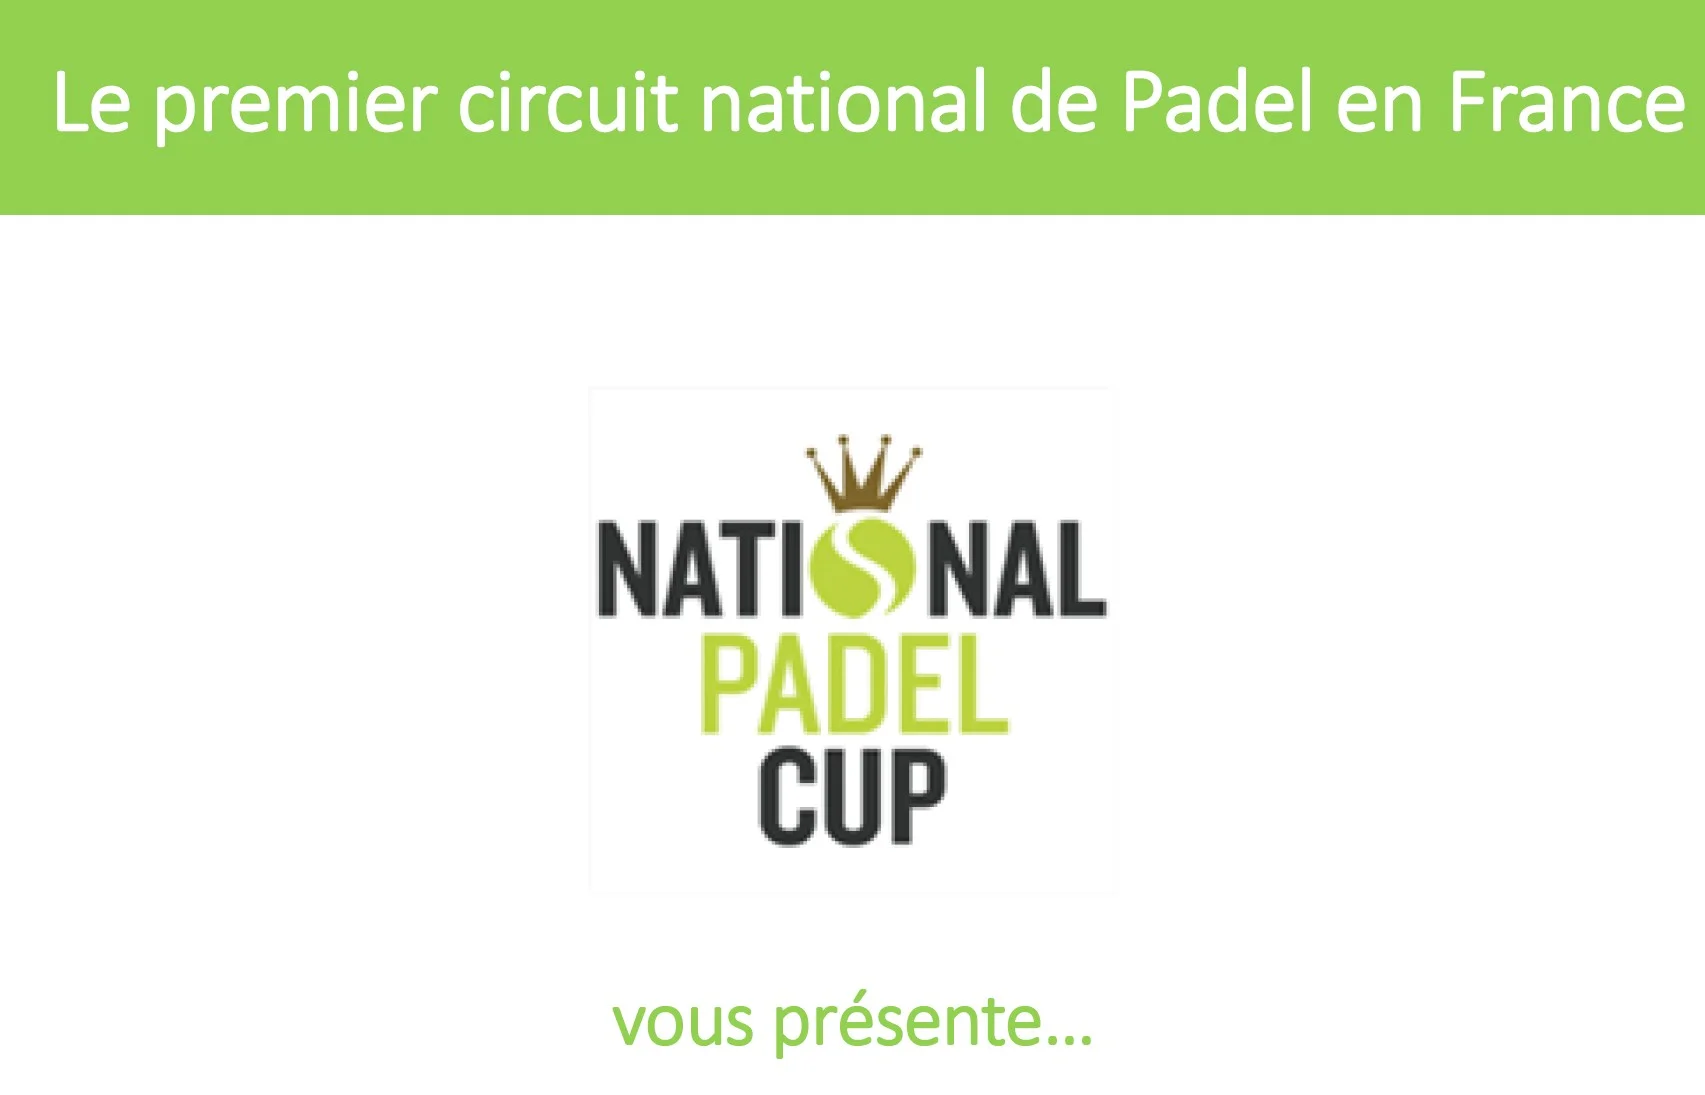 La National Padel Cup, c’est quoi ?